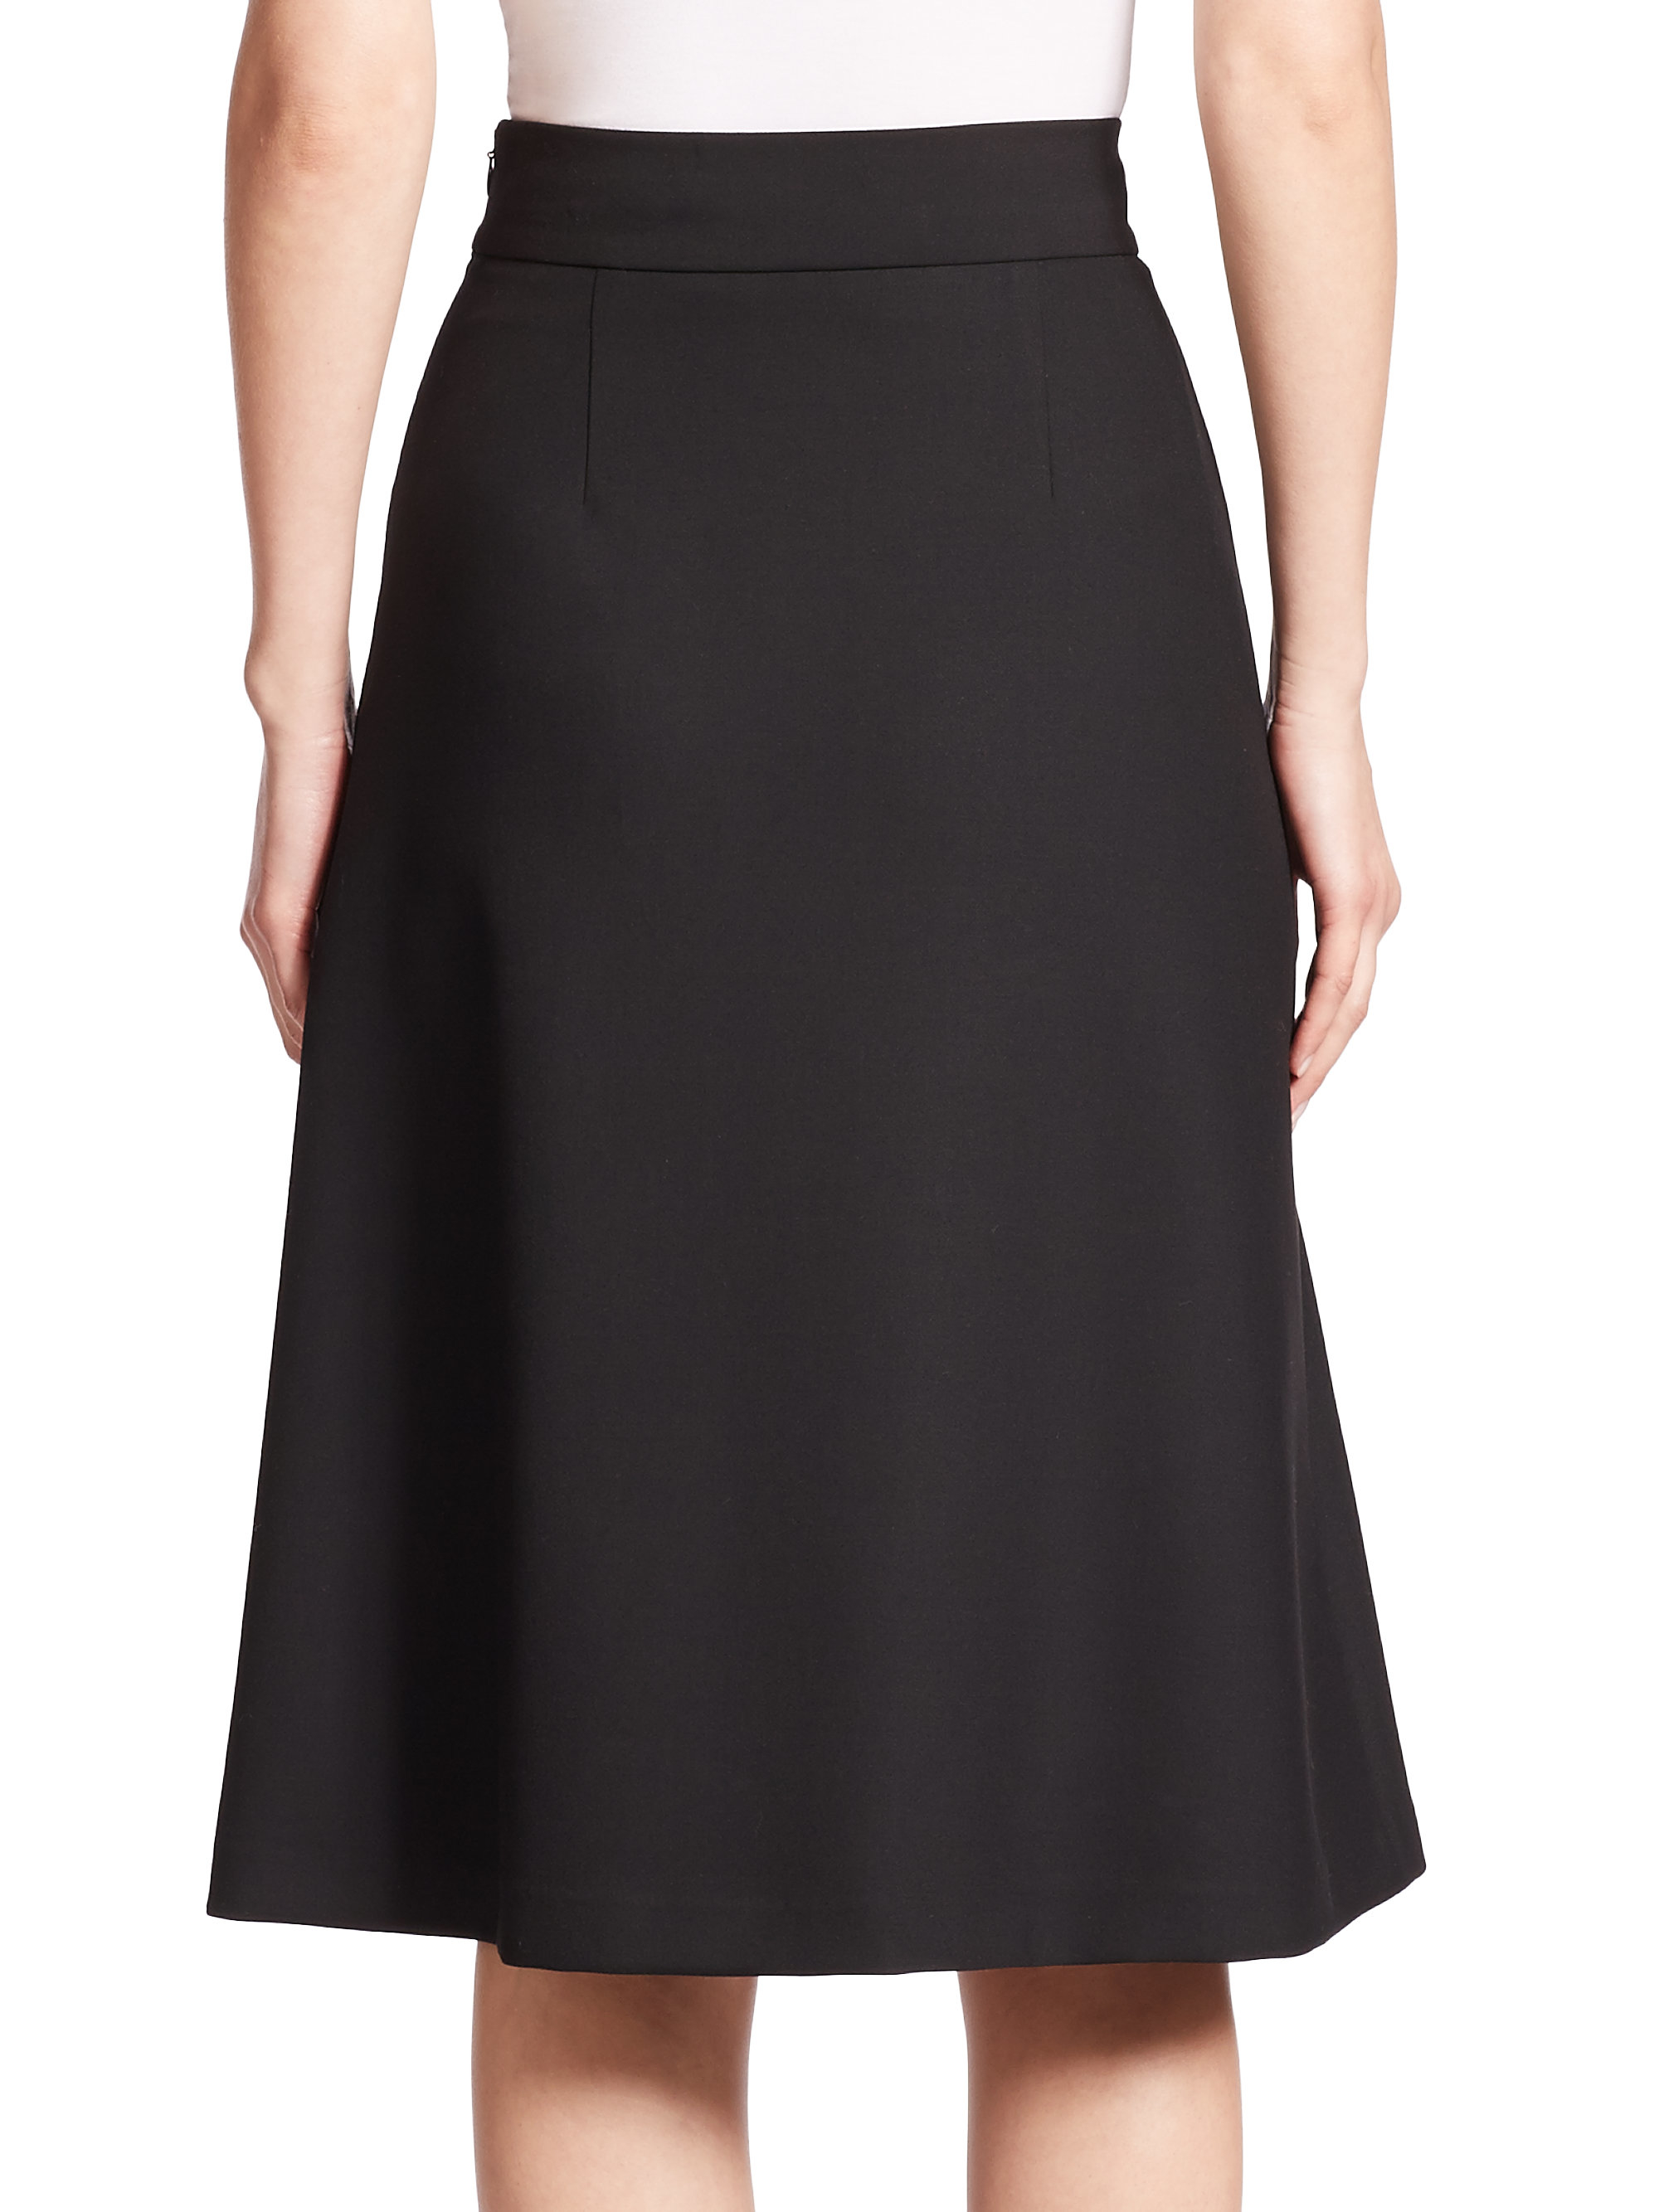 Diane von furstenberg Winslet Skirt in Black | Lyst